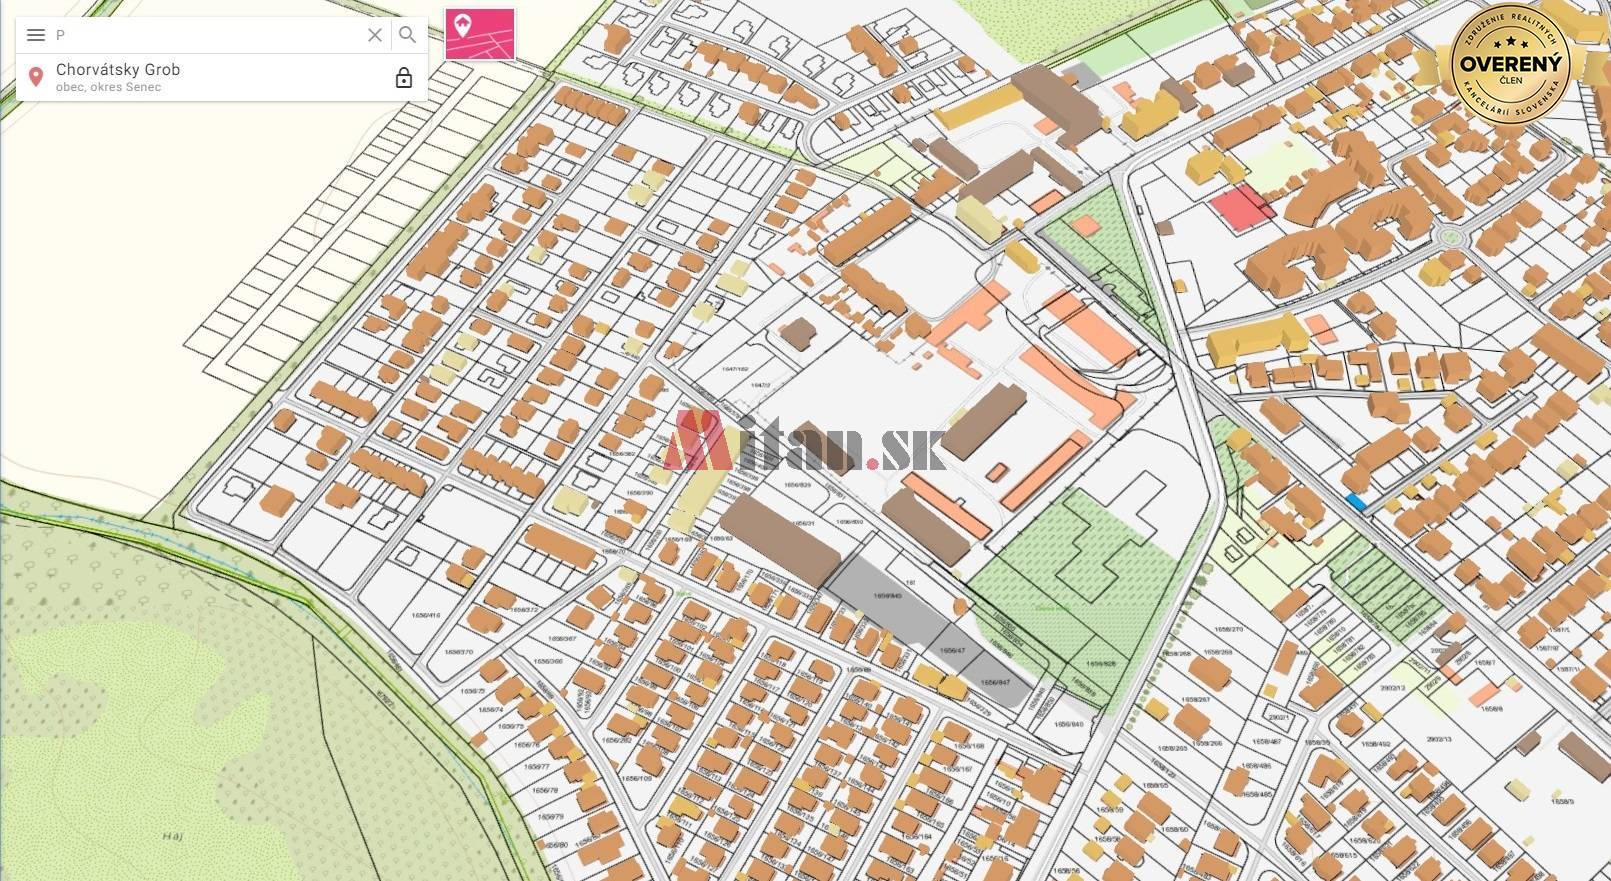 CENTRO - stavebné pozemky na predaj, Čierna Voda, Chorvátsky Grob - 3D mapka